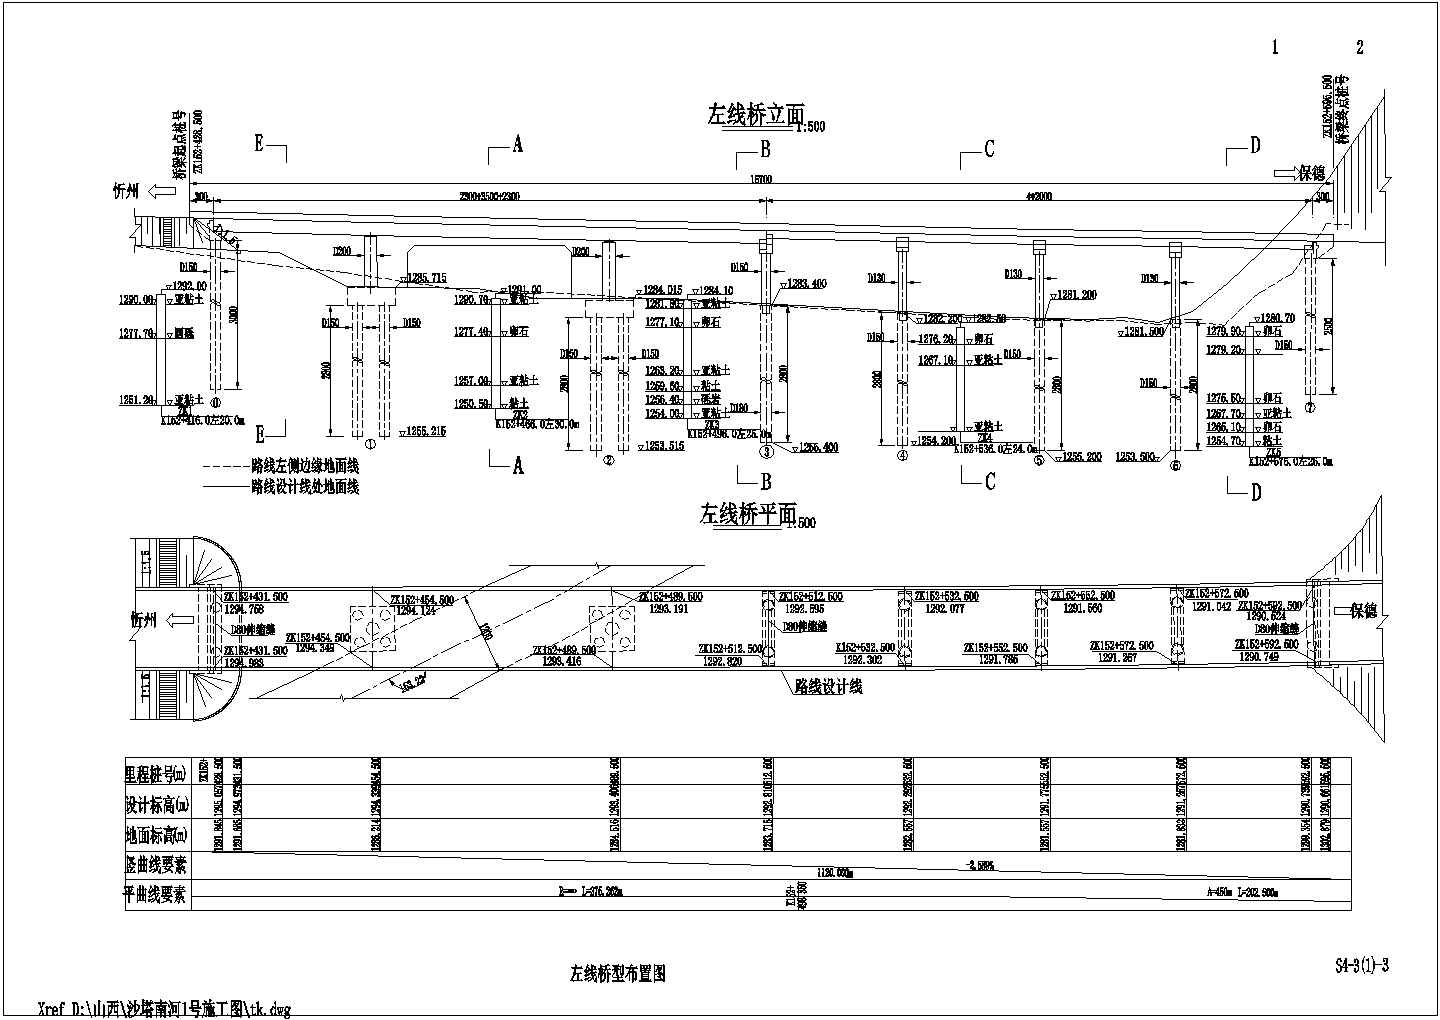 山西高速沙塔南河1号大桥部分设计施工图